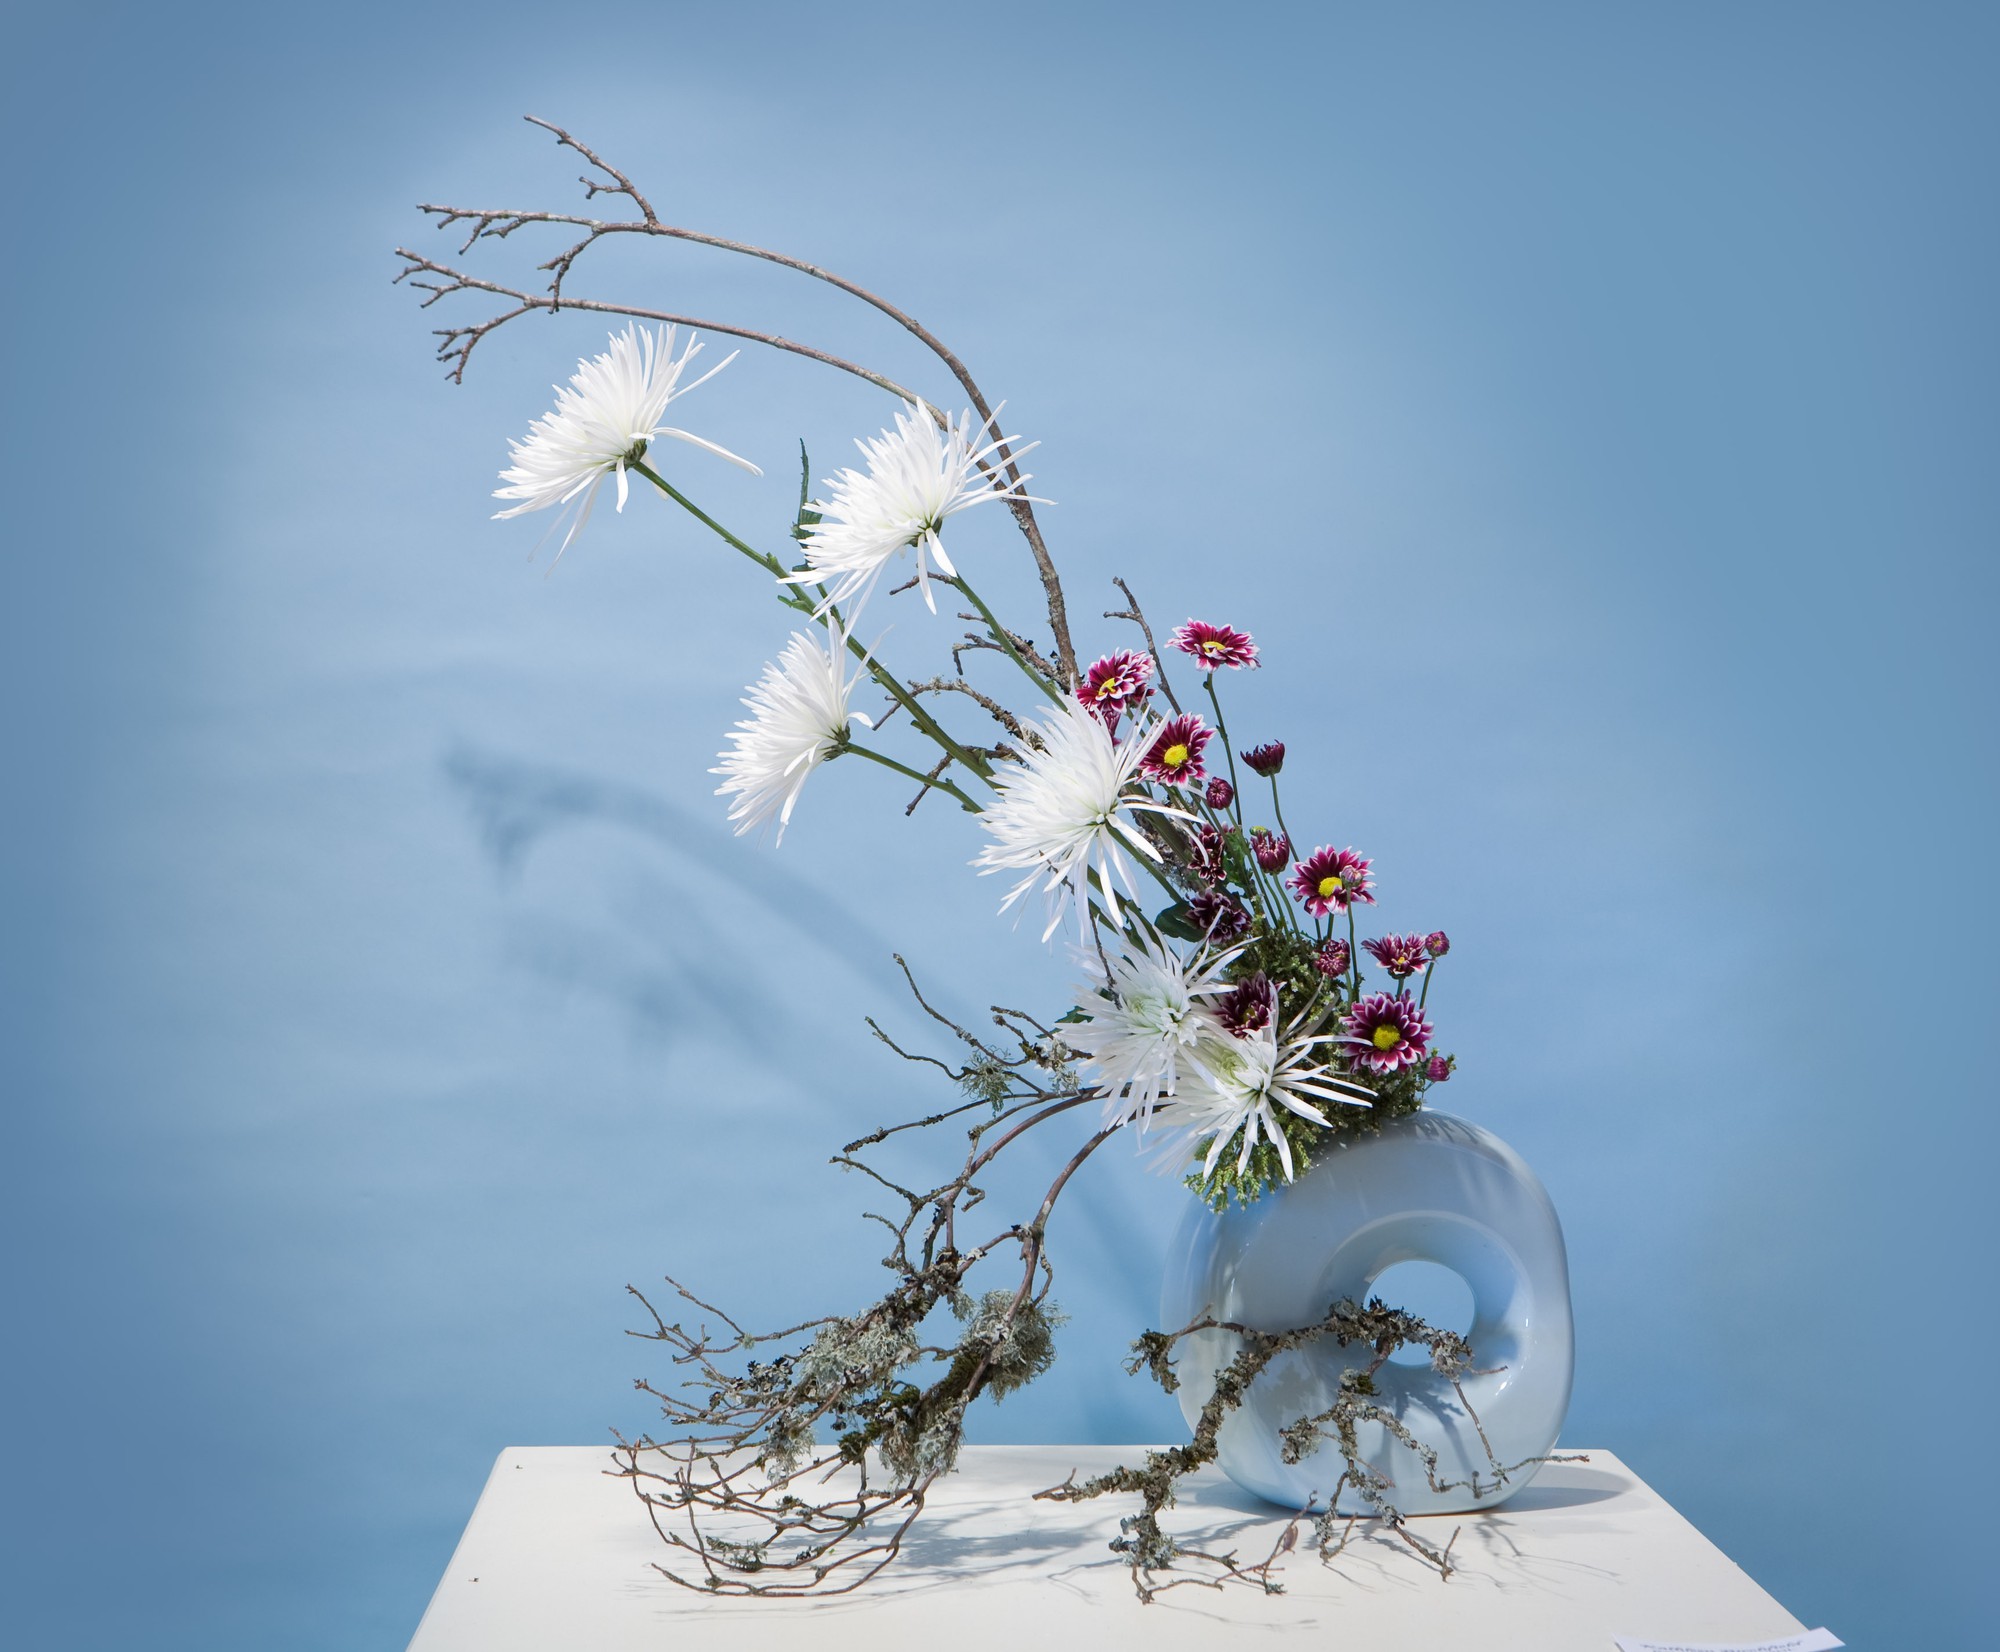 Ikebana là nghệ thuật cắm hoa đến từ Nhật Bản, nổi tiếng với sự tinh tế và độc đáo trong việc sắp xếp các loại hoa. Nghệ thuật Ikebana đã được truyền bá và phát triển trên toàn thế giới. Xem ngay các hình ảnh Ikebana để khám phá sự độc đáo và sâu sắc của nghệ thuật cắm hoa Nhật Bản.